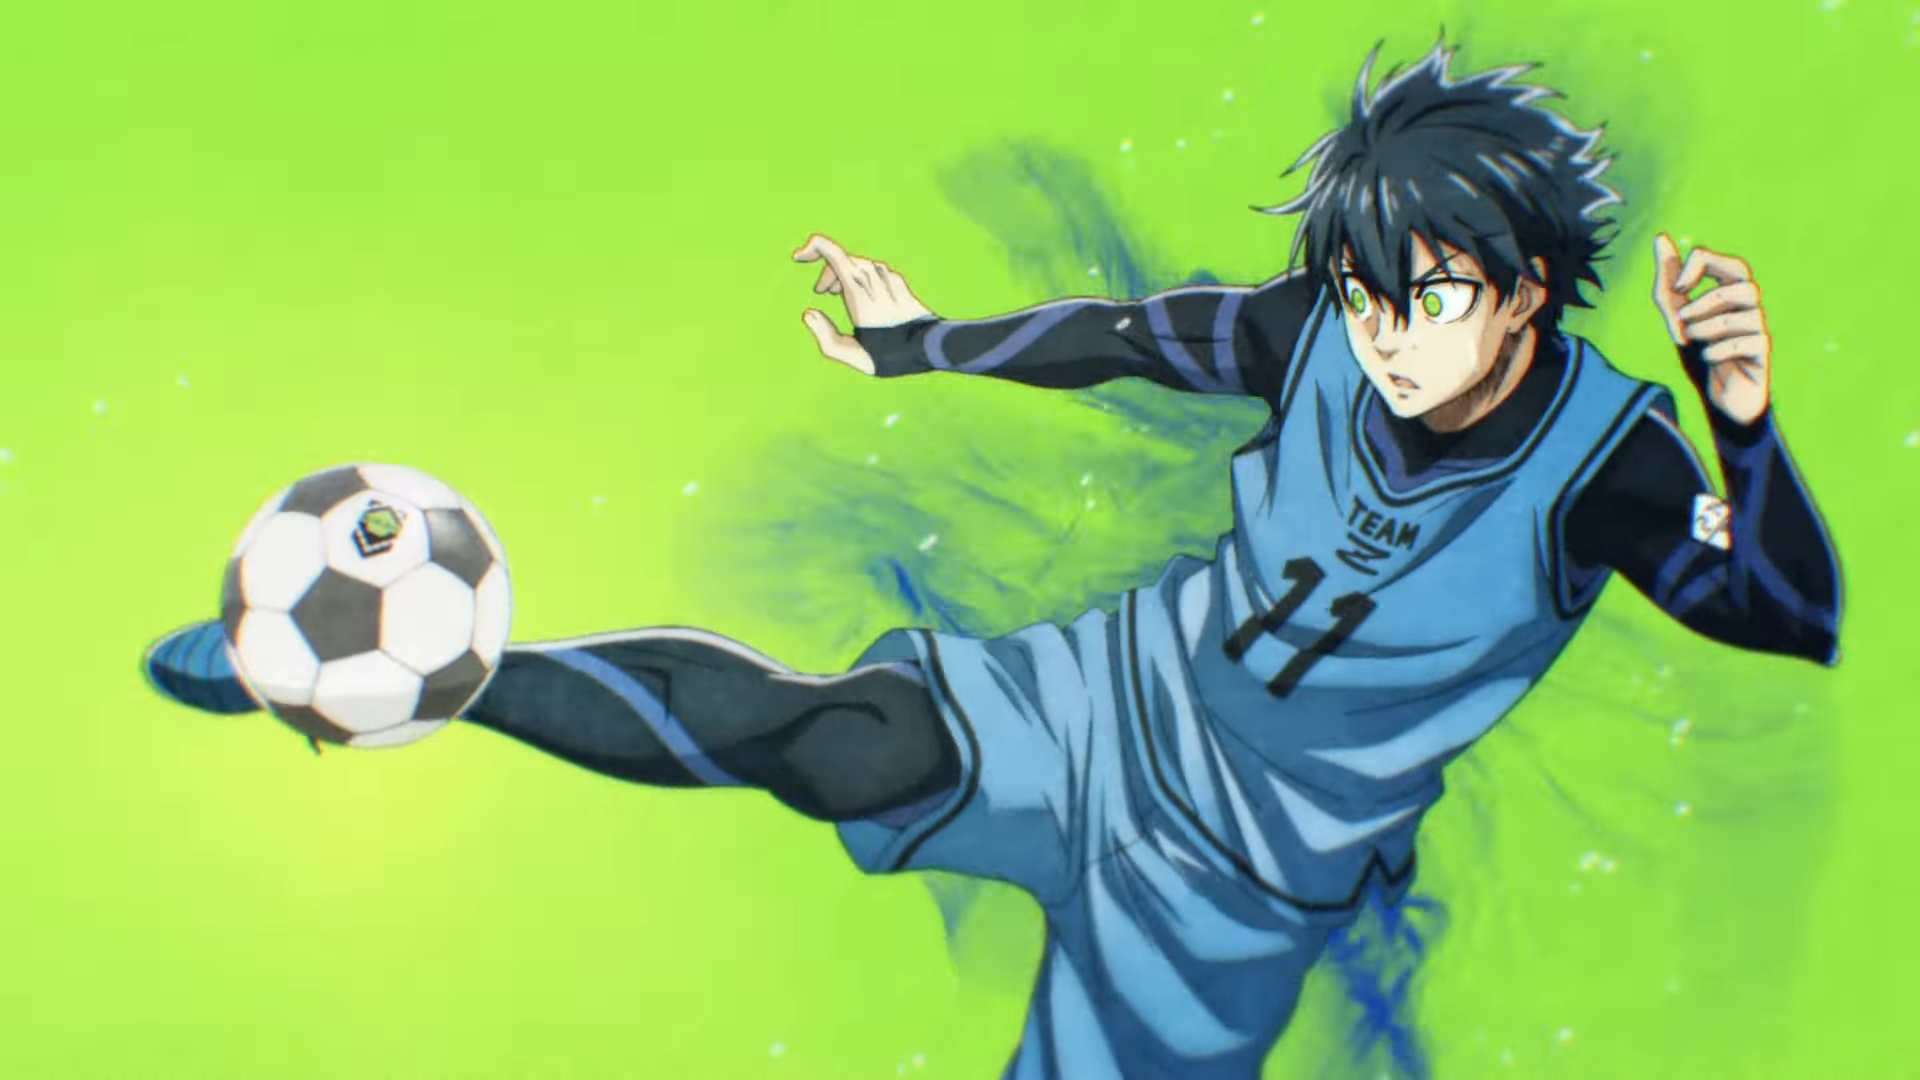 Anime Character Wallpaper Theme Kicking Ball Stock Illustration 2073801680  | Shutterstock